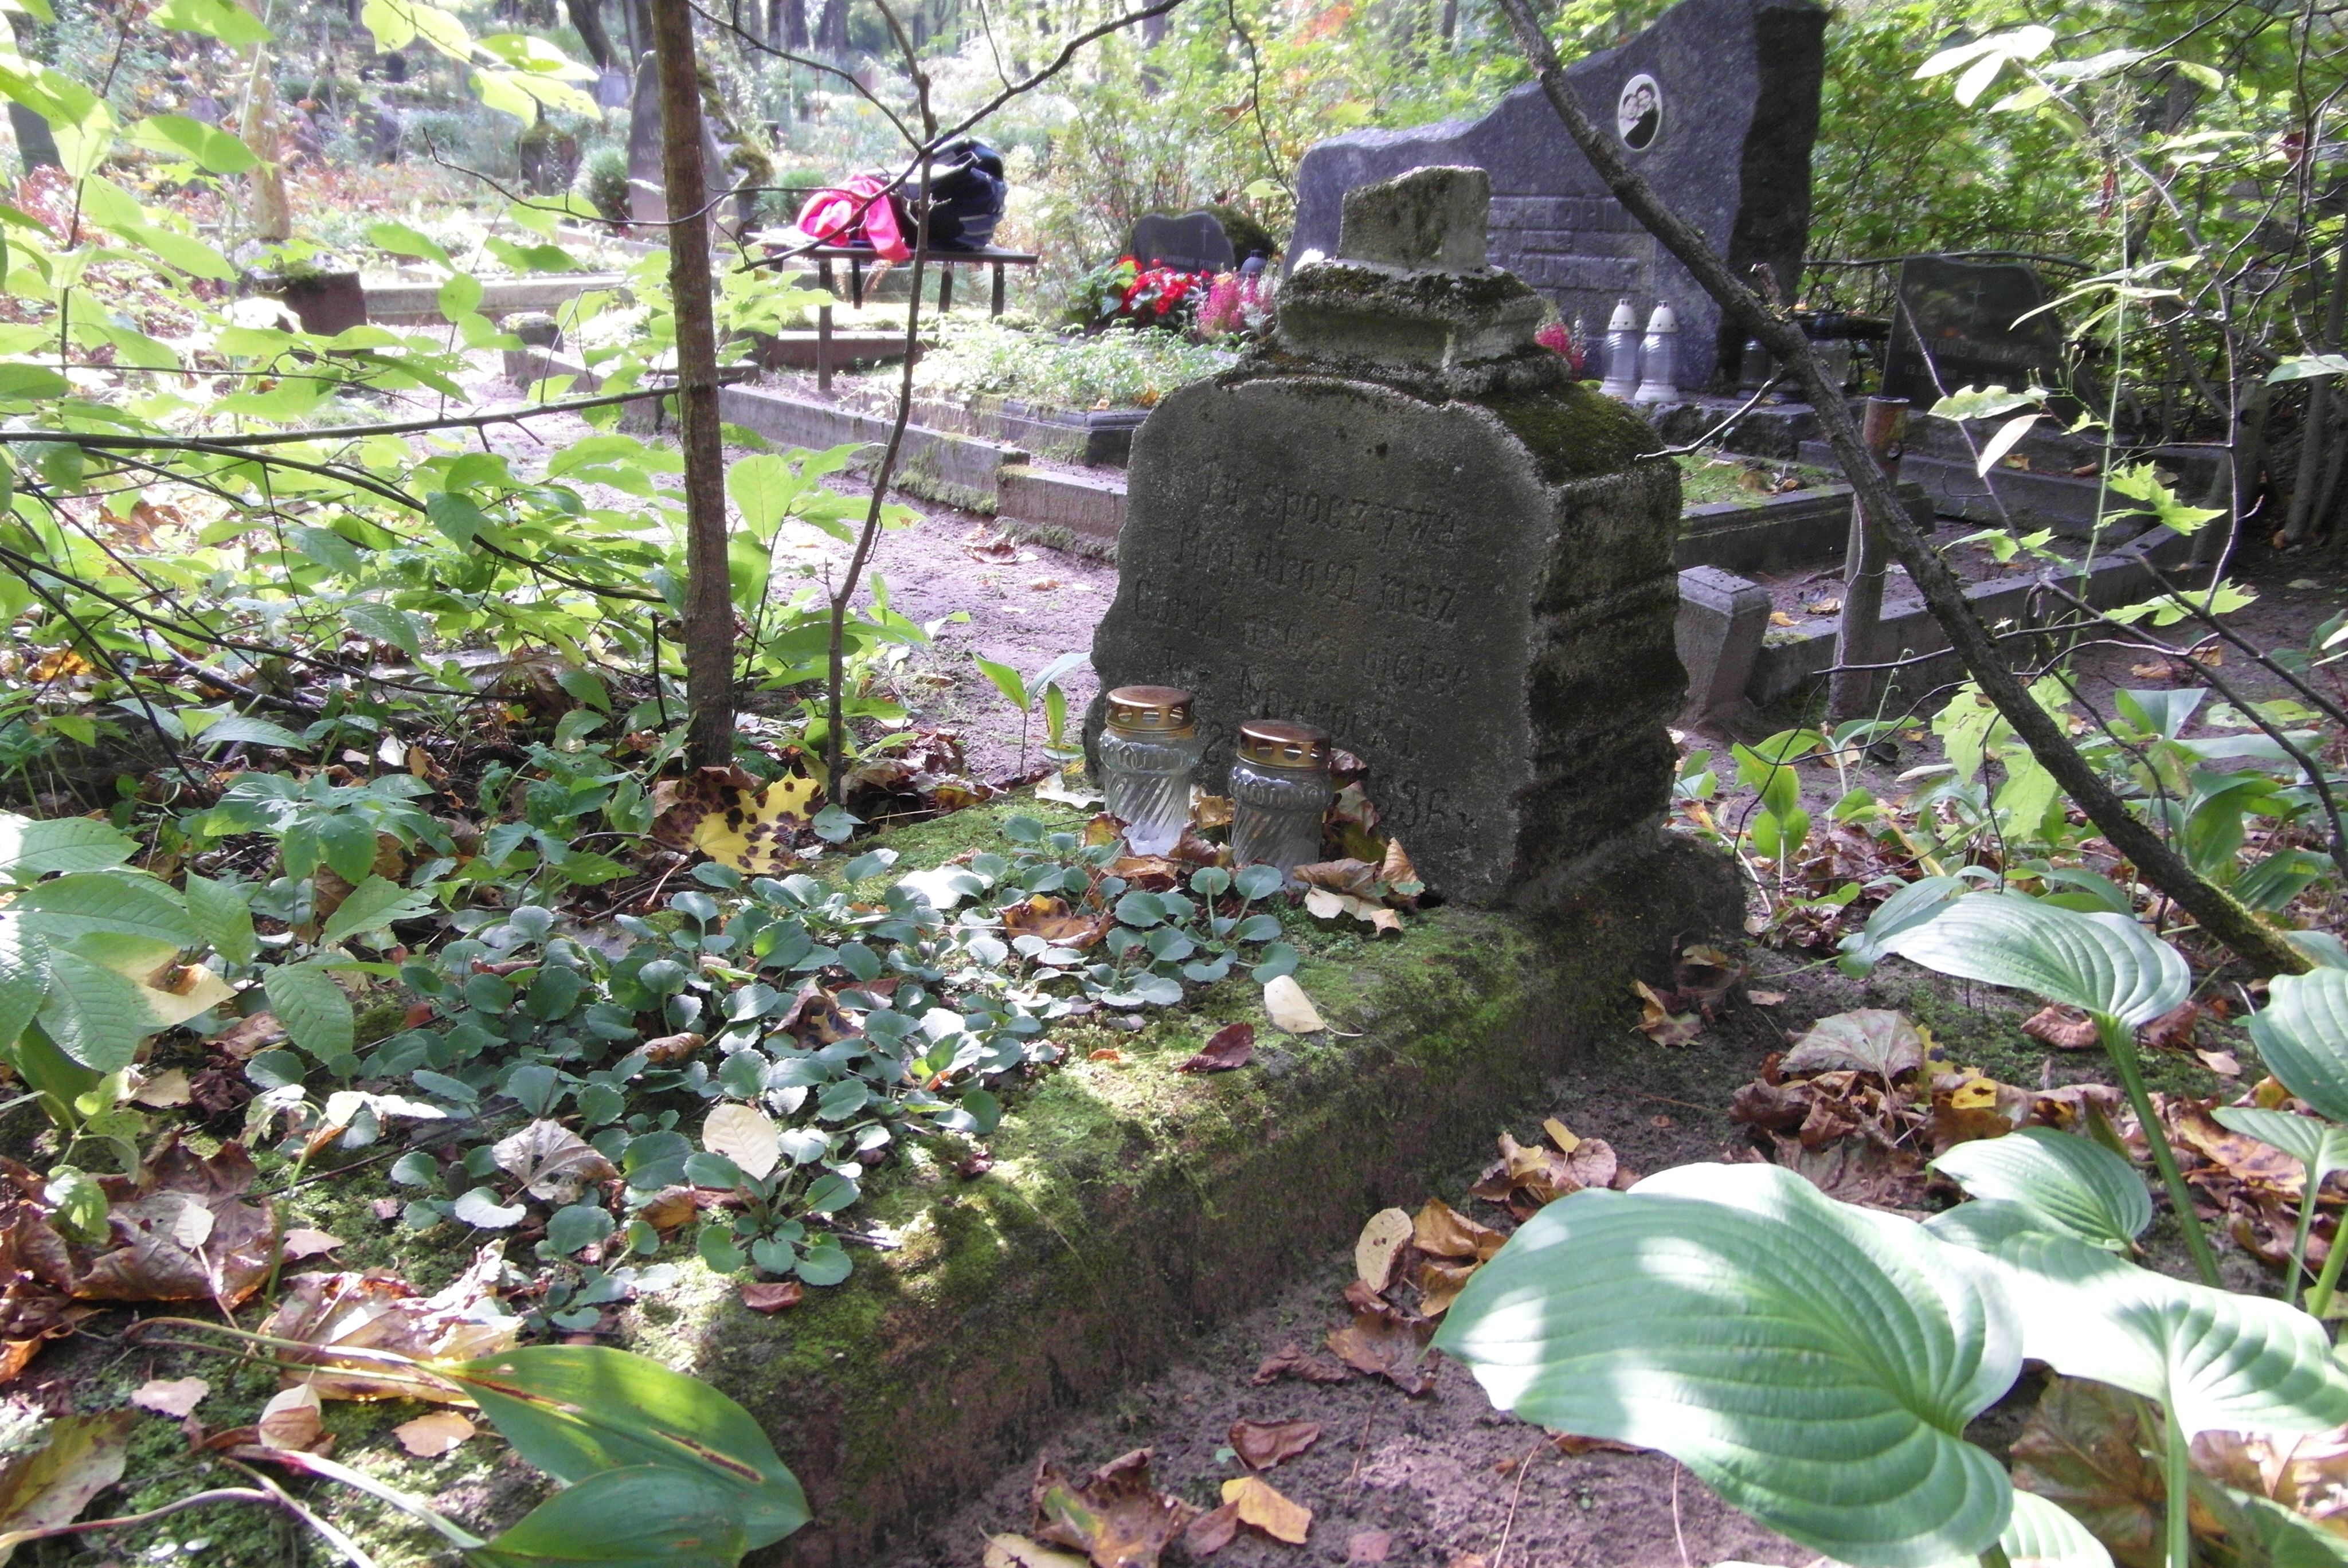 Nagrobek Jana Nawrockiego, cmentarz św. Michała w Rydze, stan z 2021 r.